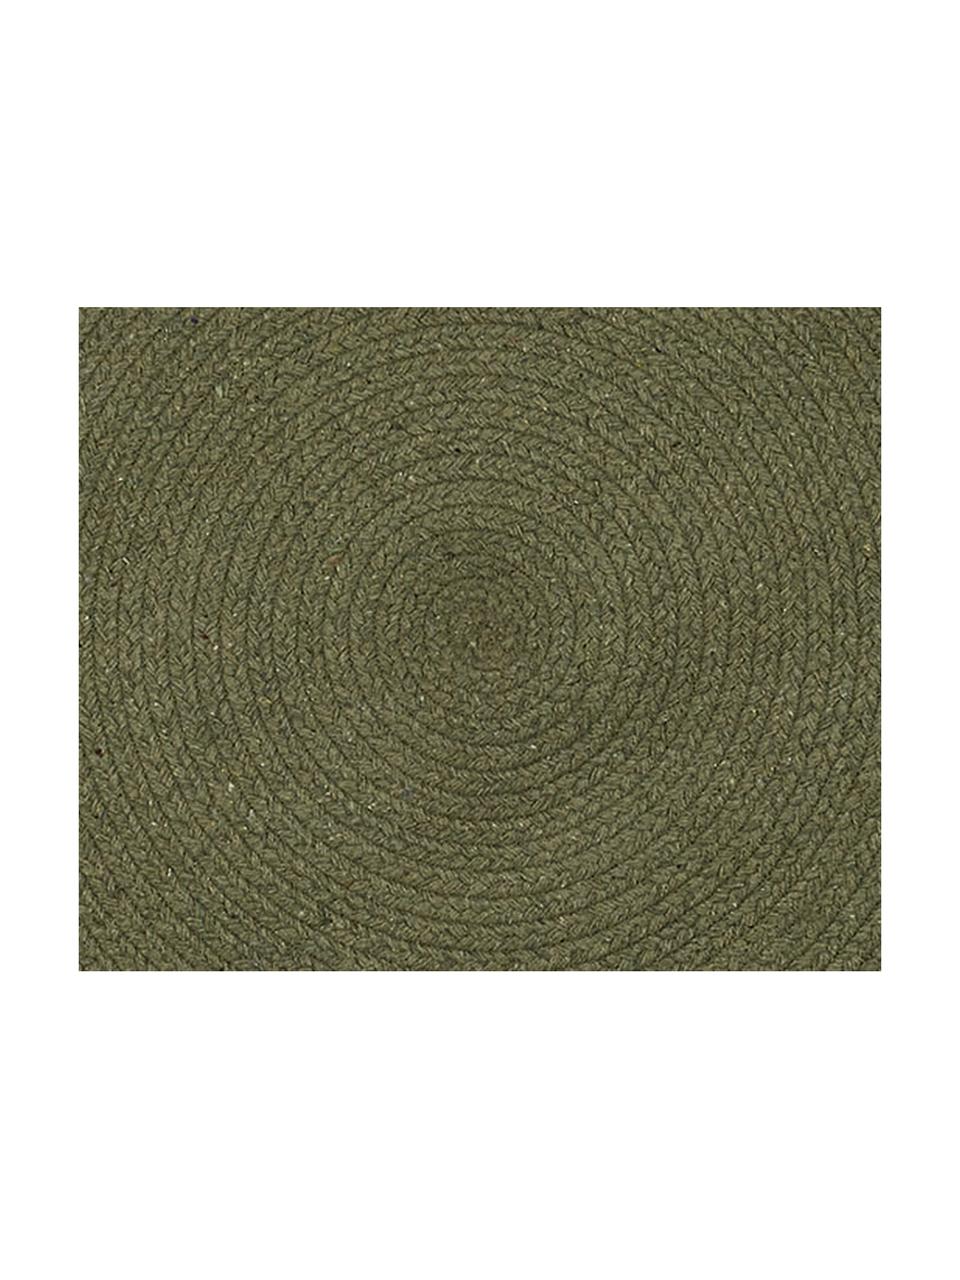 Runder Teppich Moon aus recycelter Baumwolle, 100% Recycelte Baumwolle, Khaki, Ø 90 cm (Grösse XS)